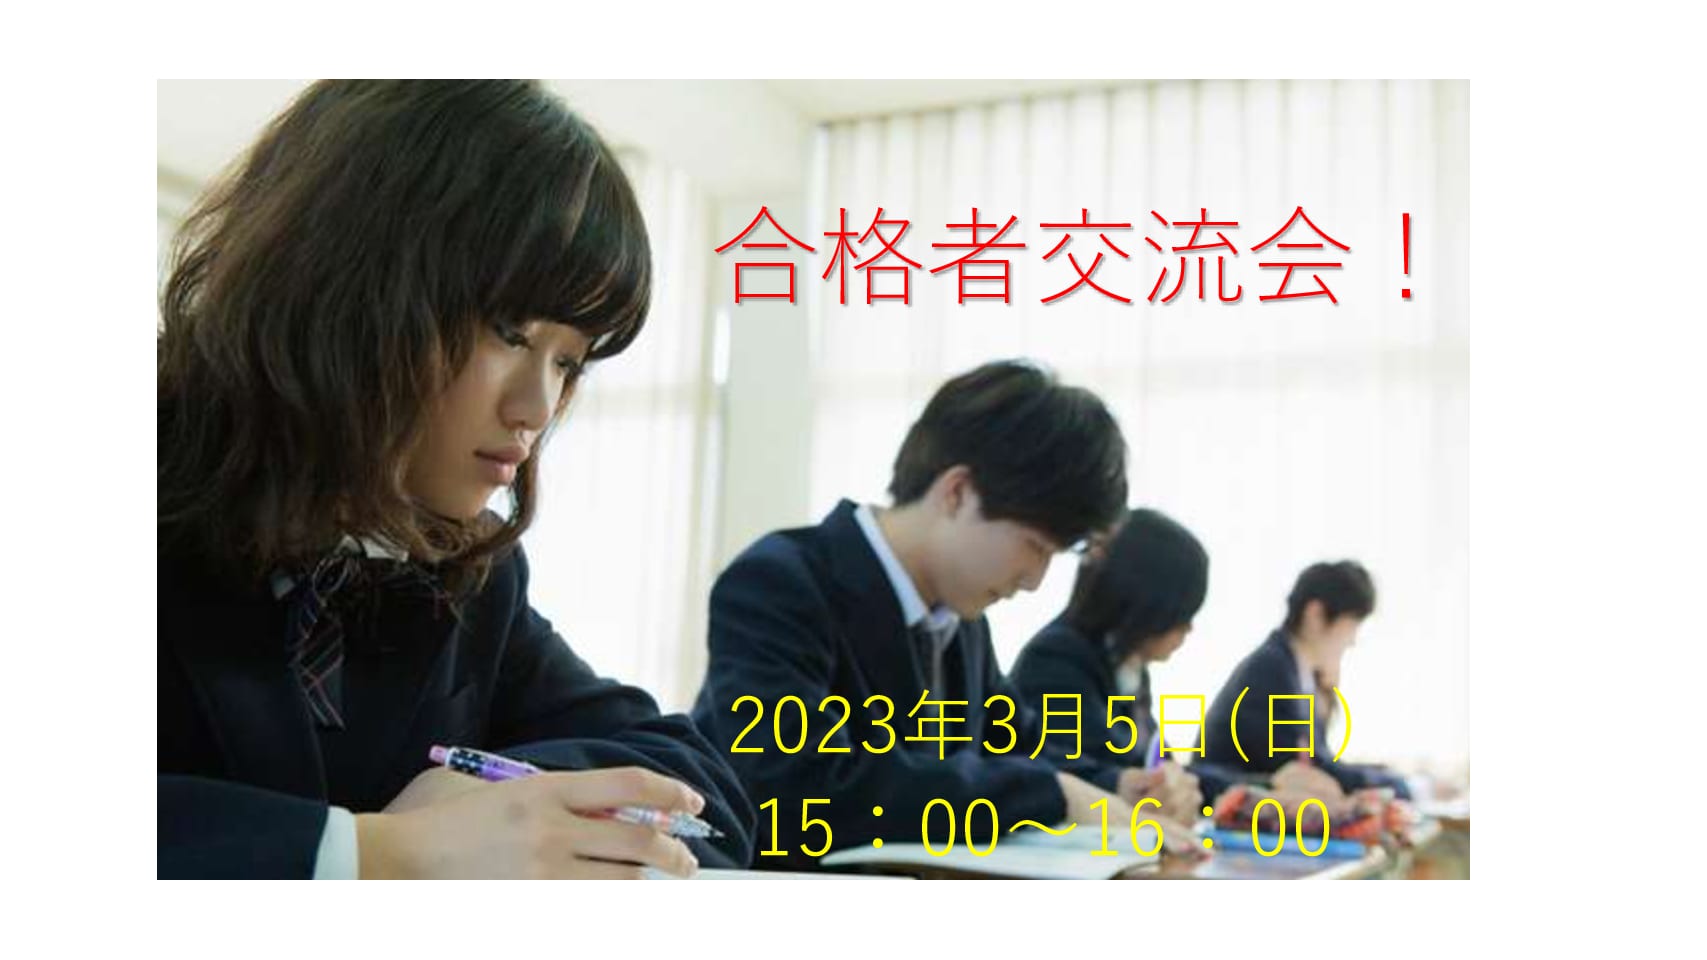 【高卒程度公務員】2023年度受験対策 合格者交流会